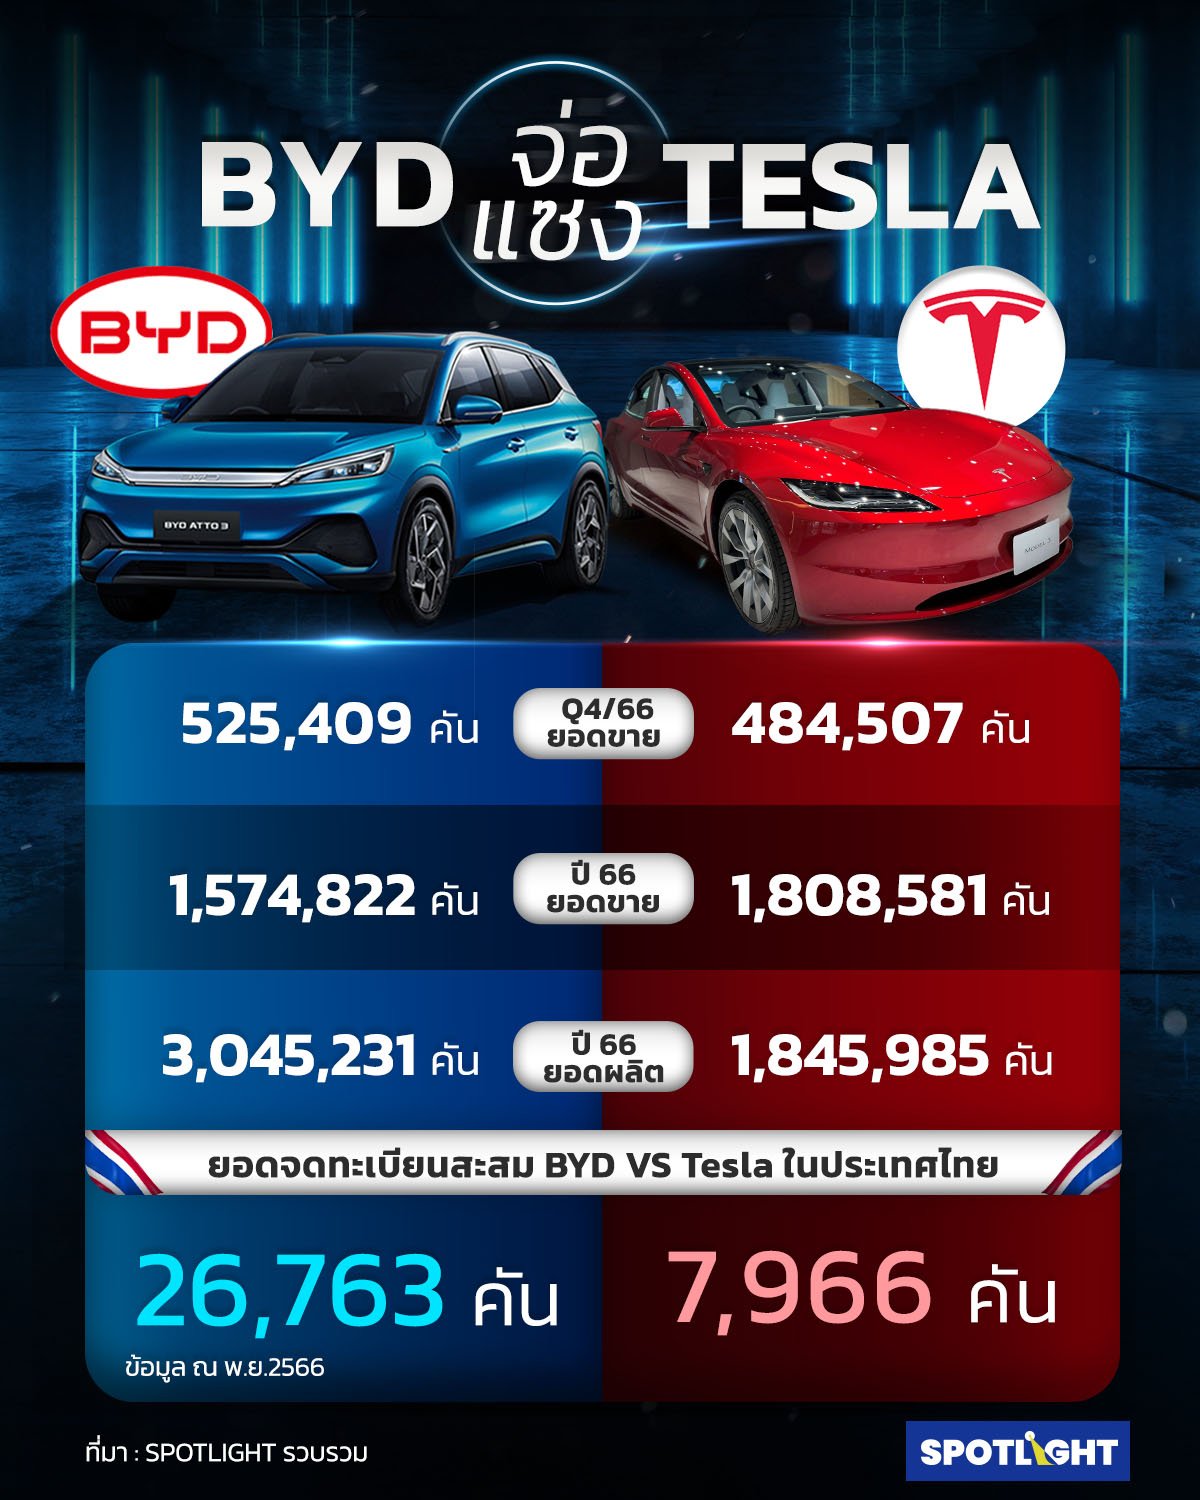 ฺBYD แซง Tesla 